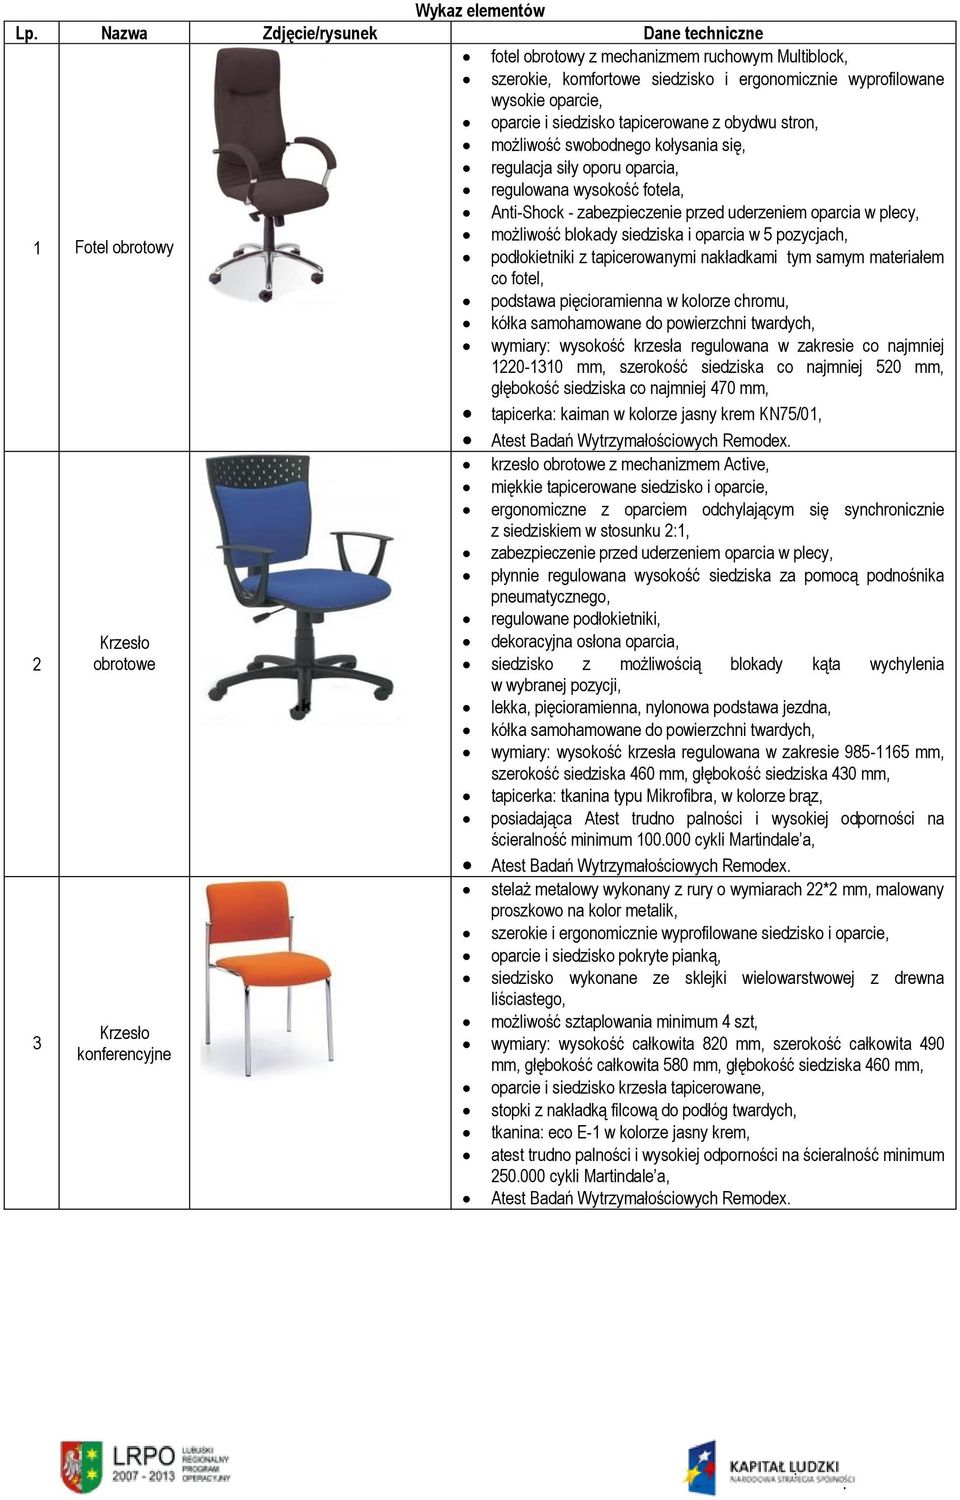 pozycjach, 1 Fotel obrotowy podłokietniki z tapicerowanymi nakładkami tym samym materiałem co fotel, podstawa pięcioramienna w kolorze chromu, wymiary: wysokość krzesła regulowana w zakresie co